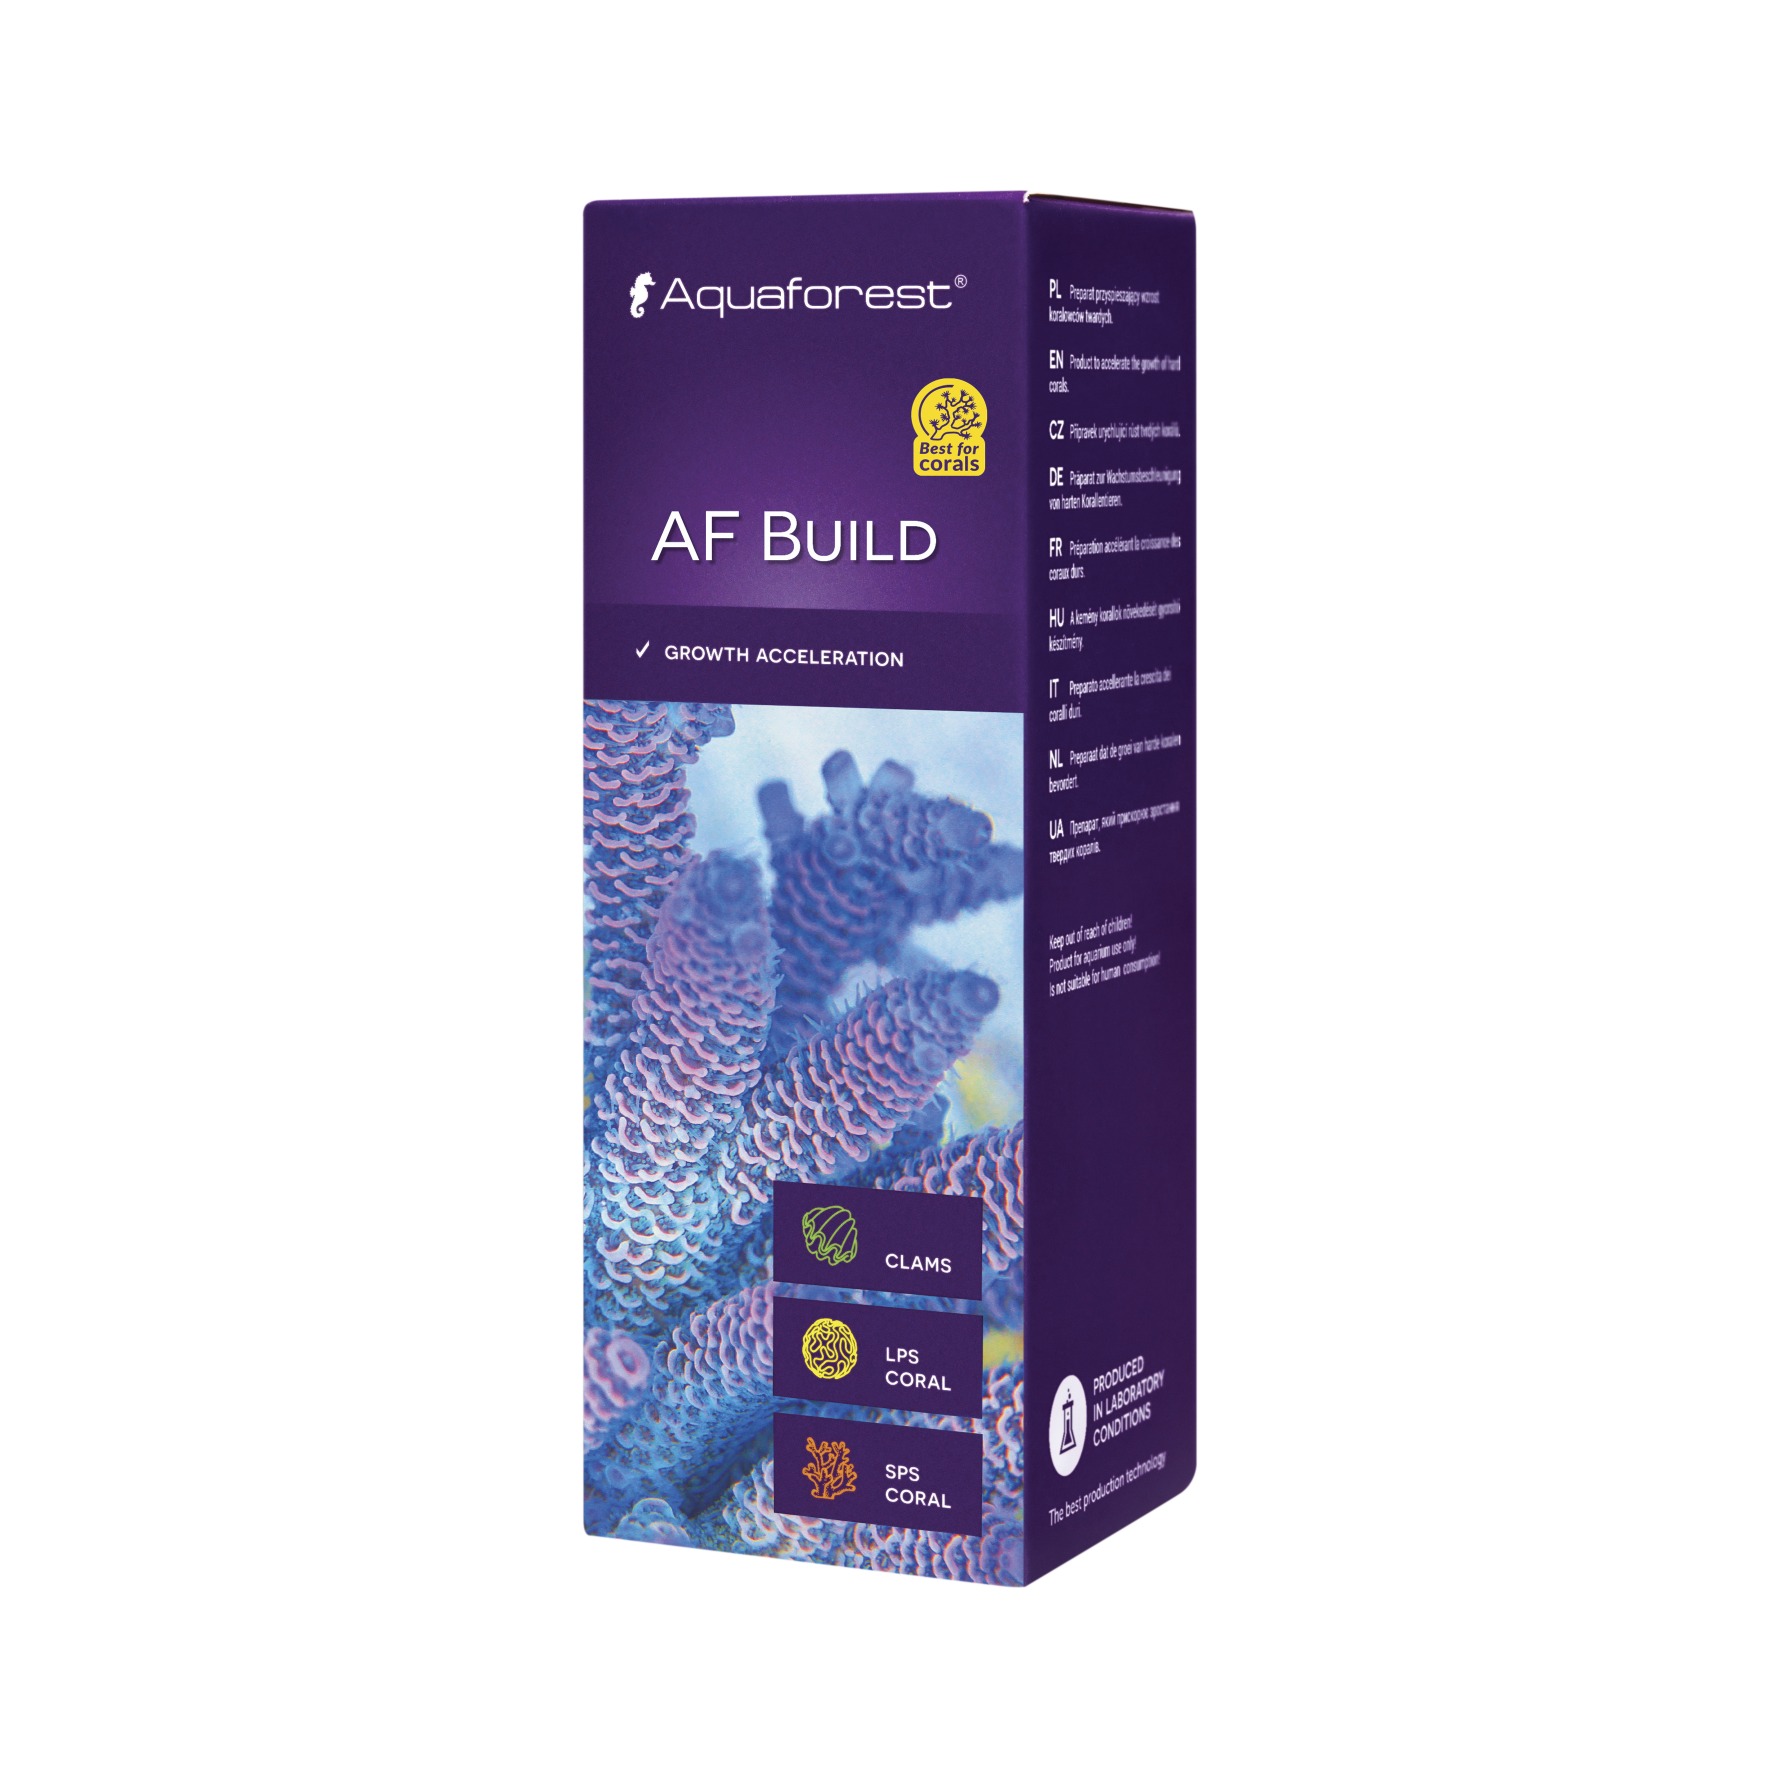 AQUAFOREST AF Build 10 ml préparation à base de iodes, carbonates, calcium, permettant d'accélérer la croissance des coraux